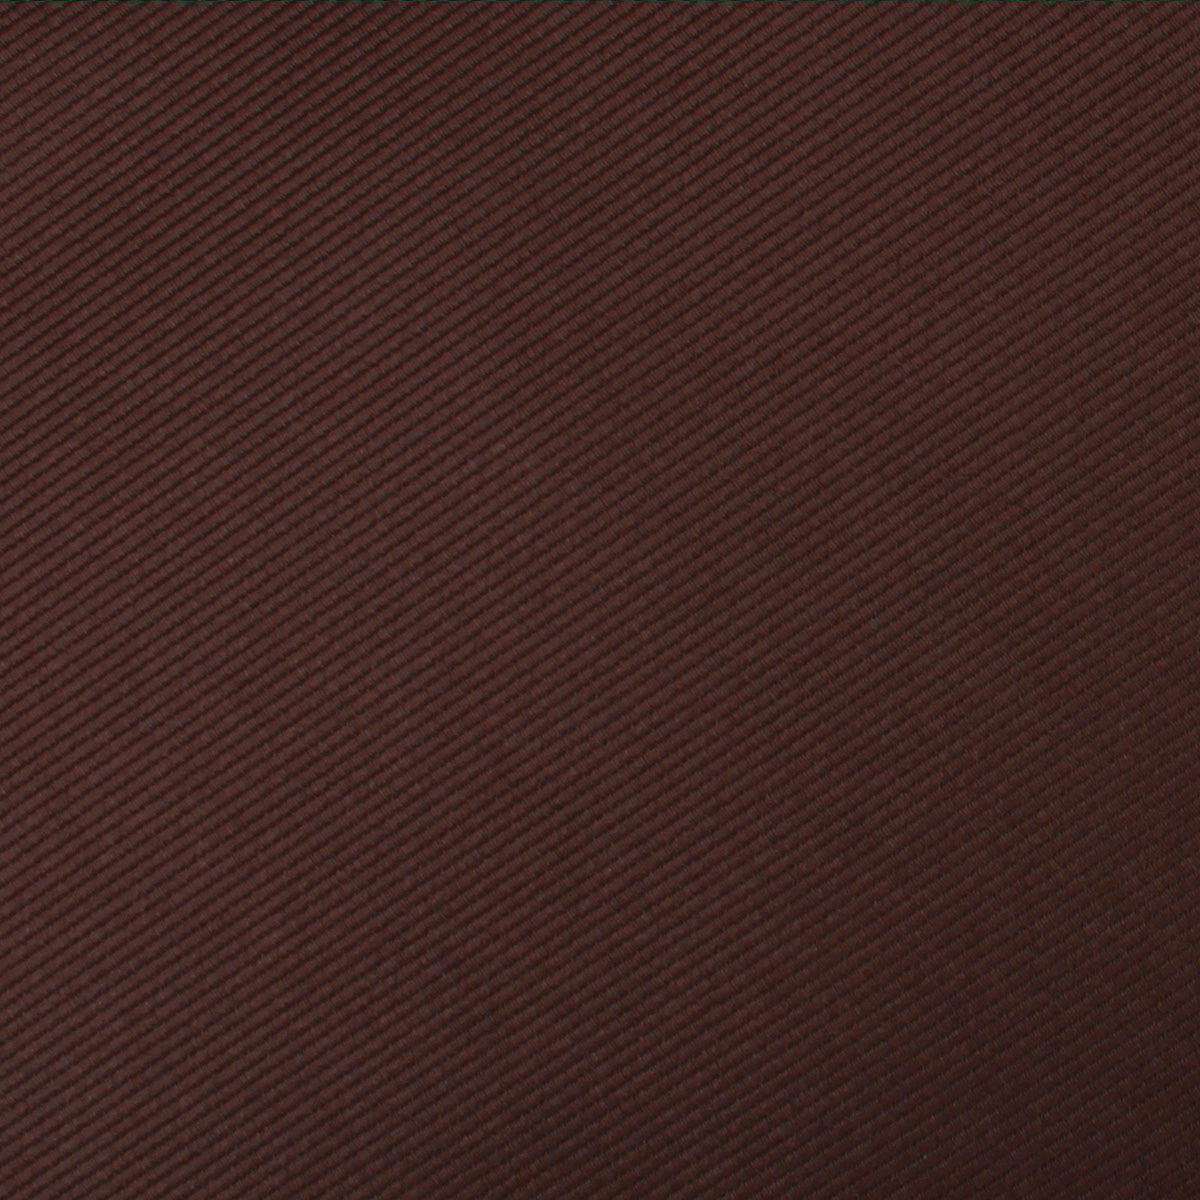 Chocolate Brown Twill Necktie Fabric